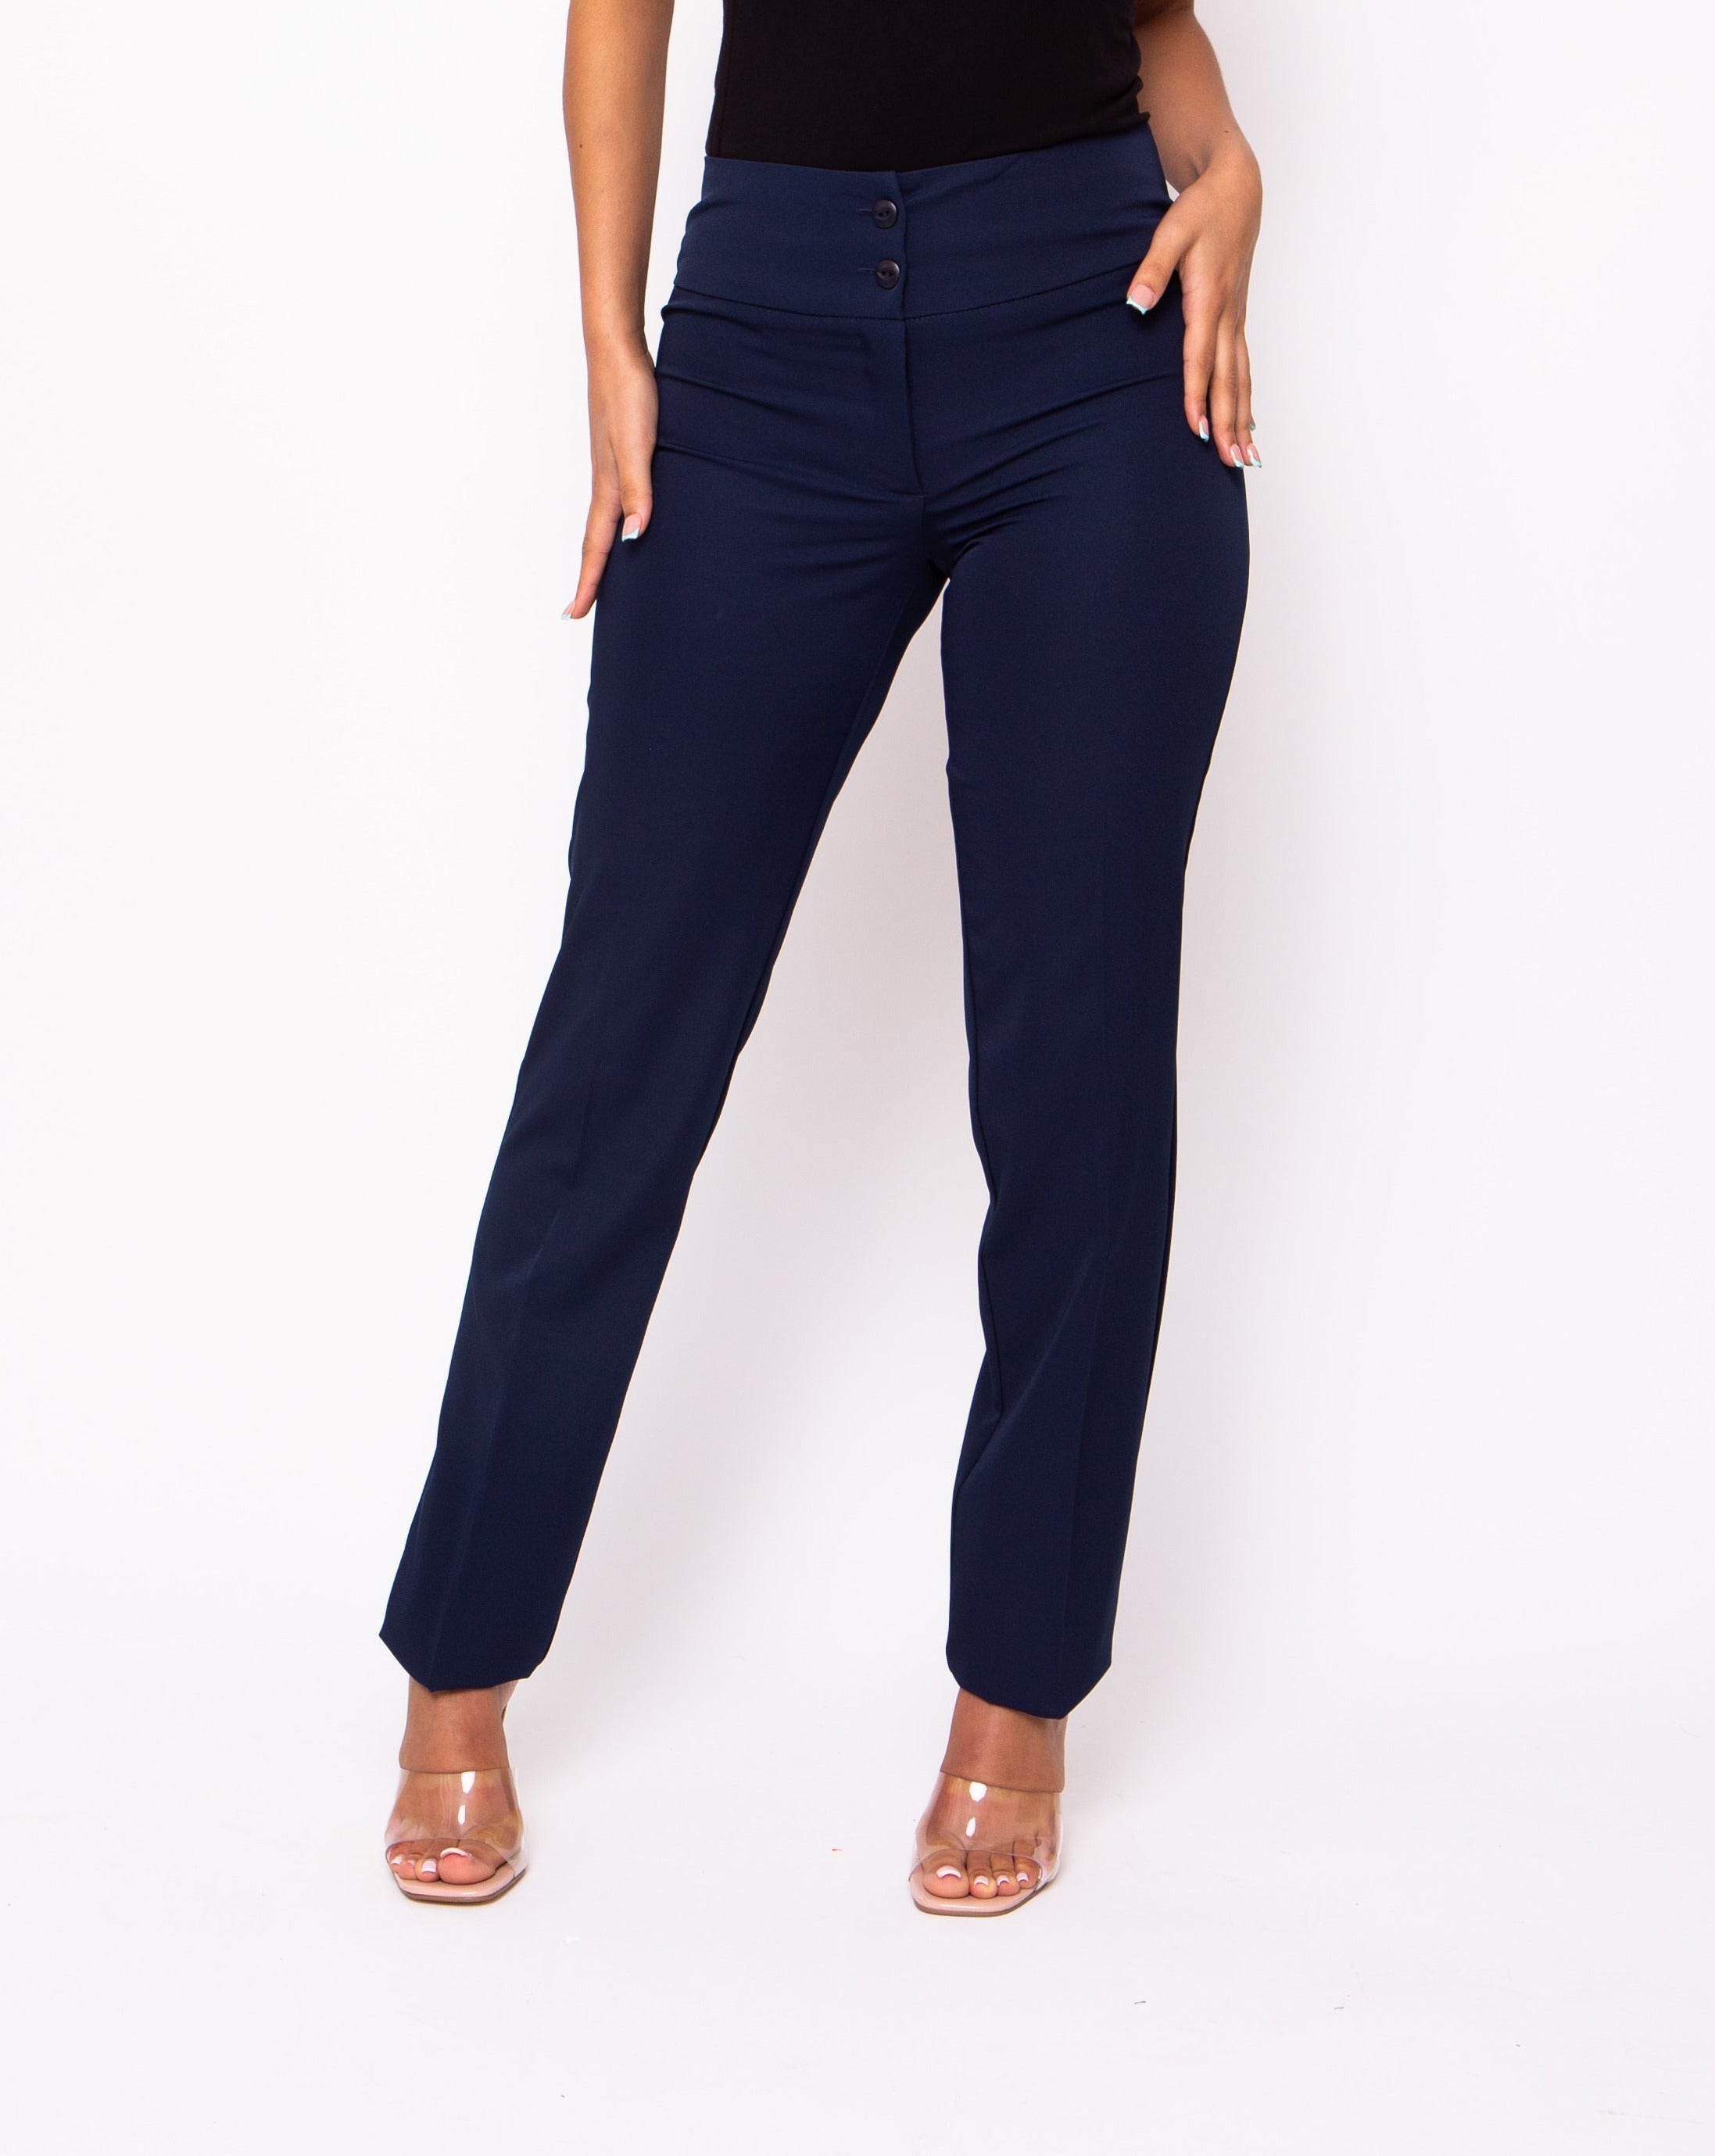 Slim standard-waisted trousers black ladies' | Morgan